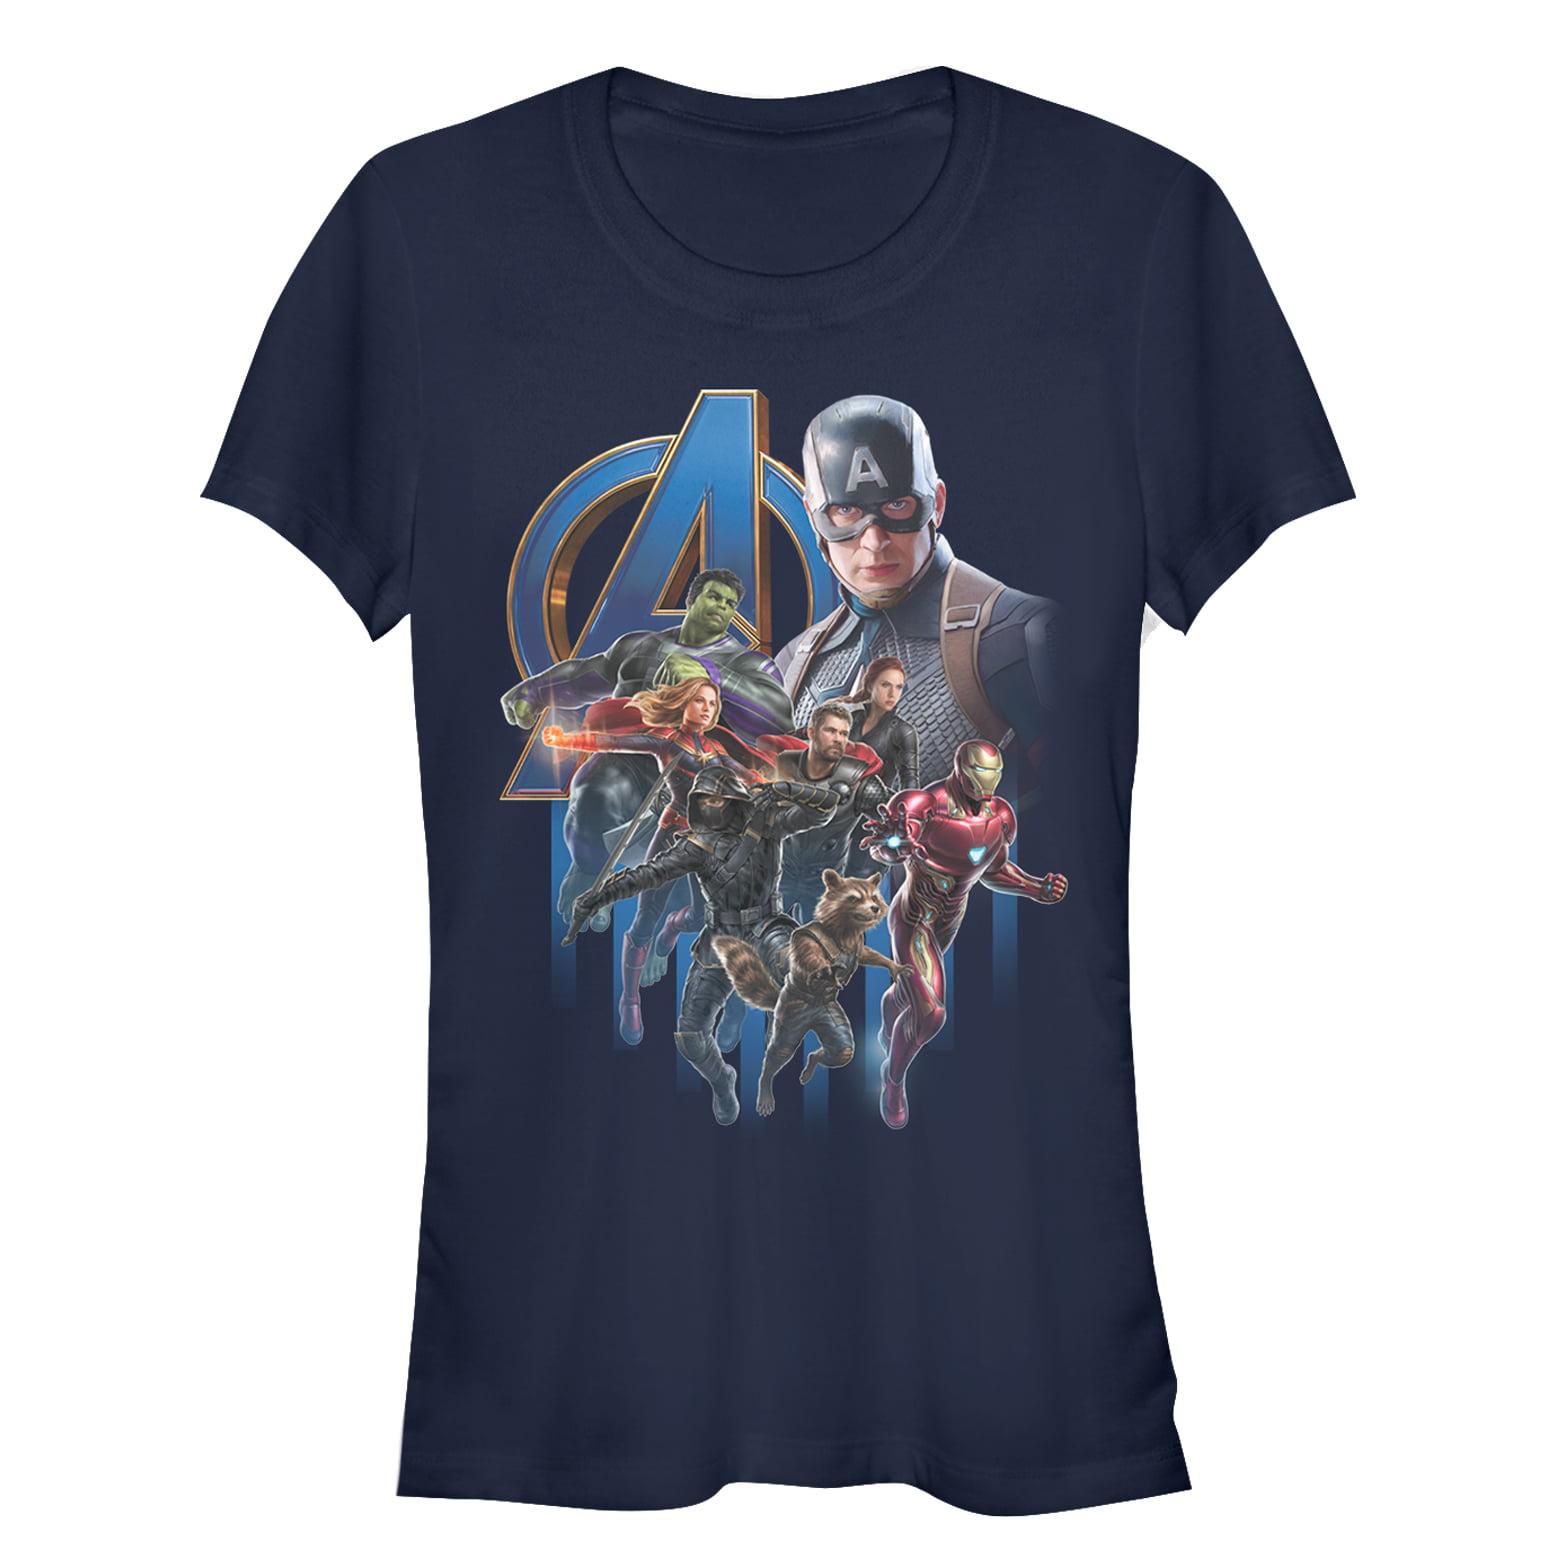 Marvel Girls Avengers Endgame Black Widow Team Suit T-Shirt